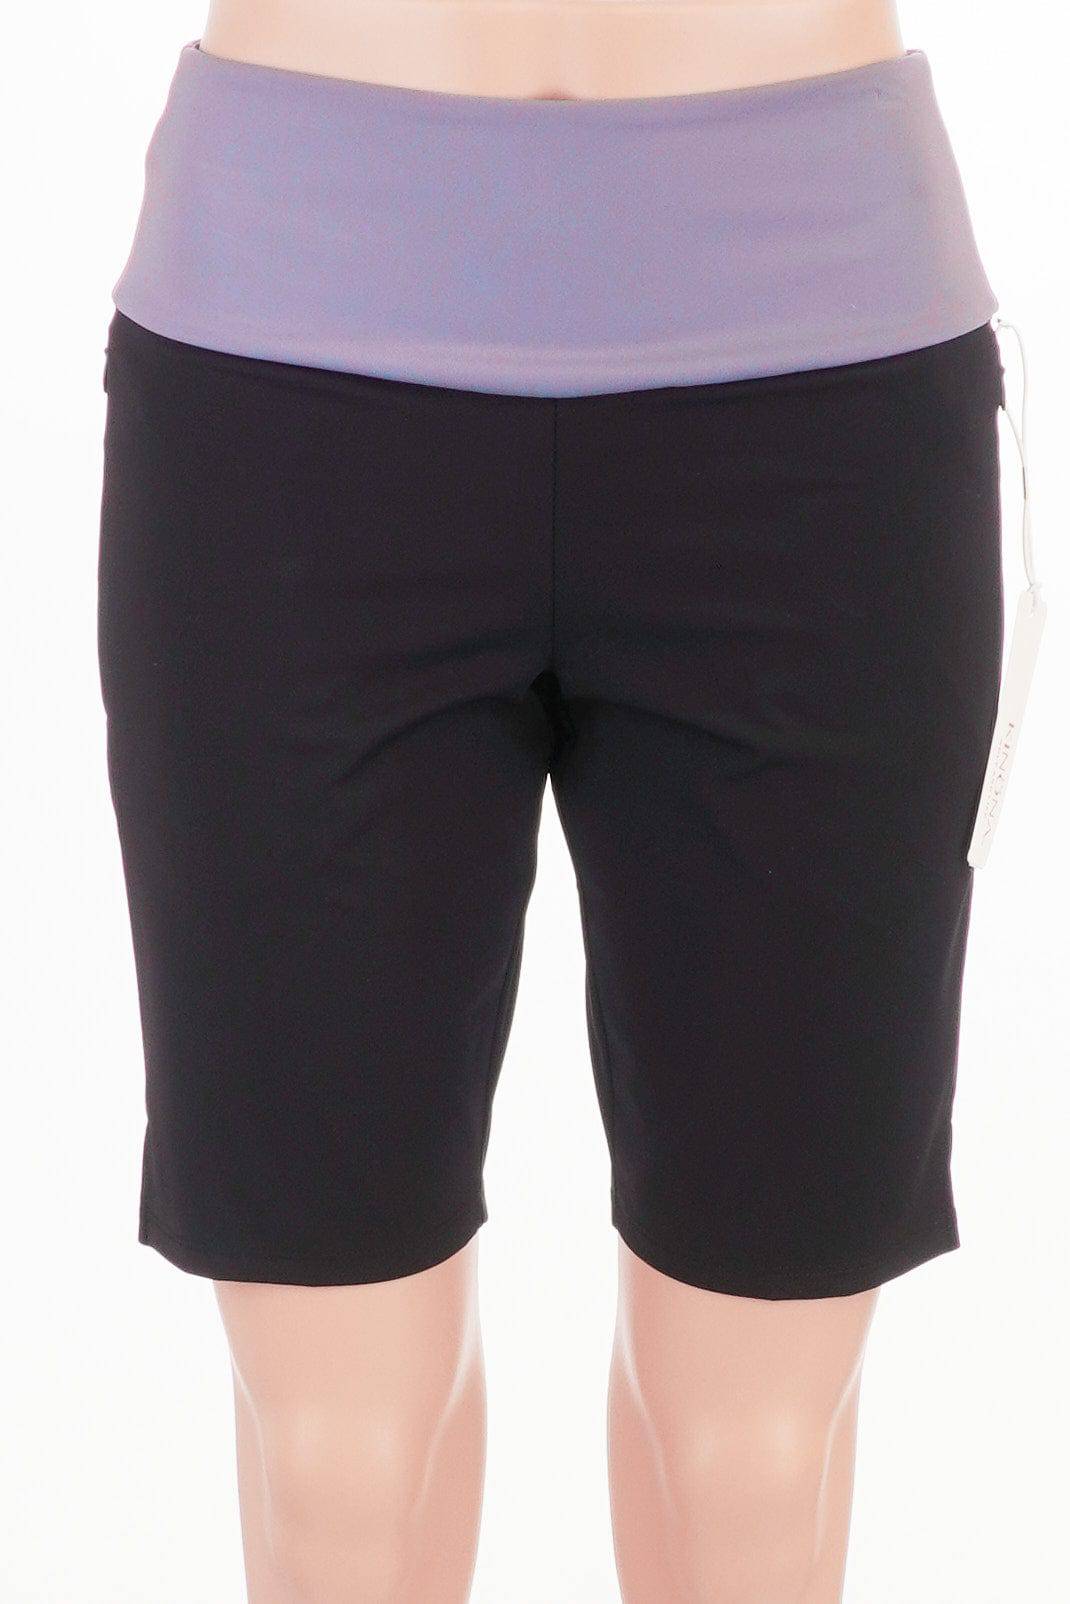 Kinona Black / X-Small / Consigned Kinona Black Golf Shorts Size XS